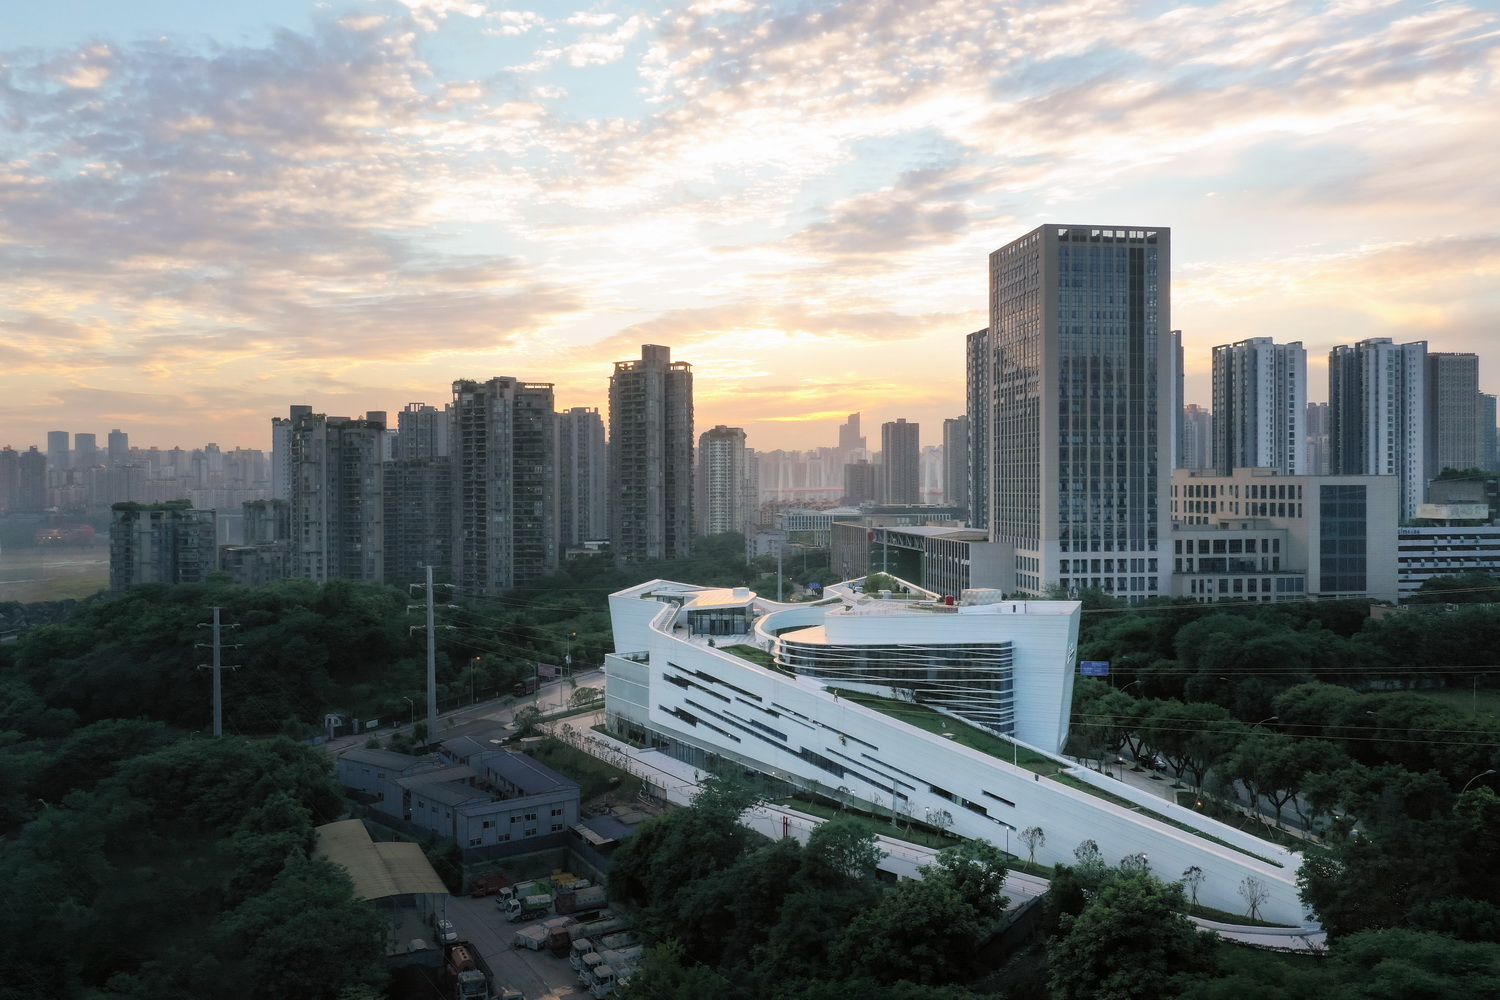 重庆 三峡文物科技保护基地 建筑设计  / 源道建筑